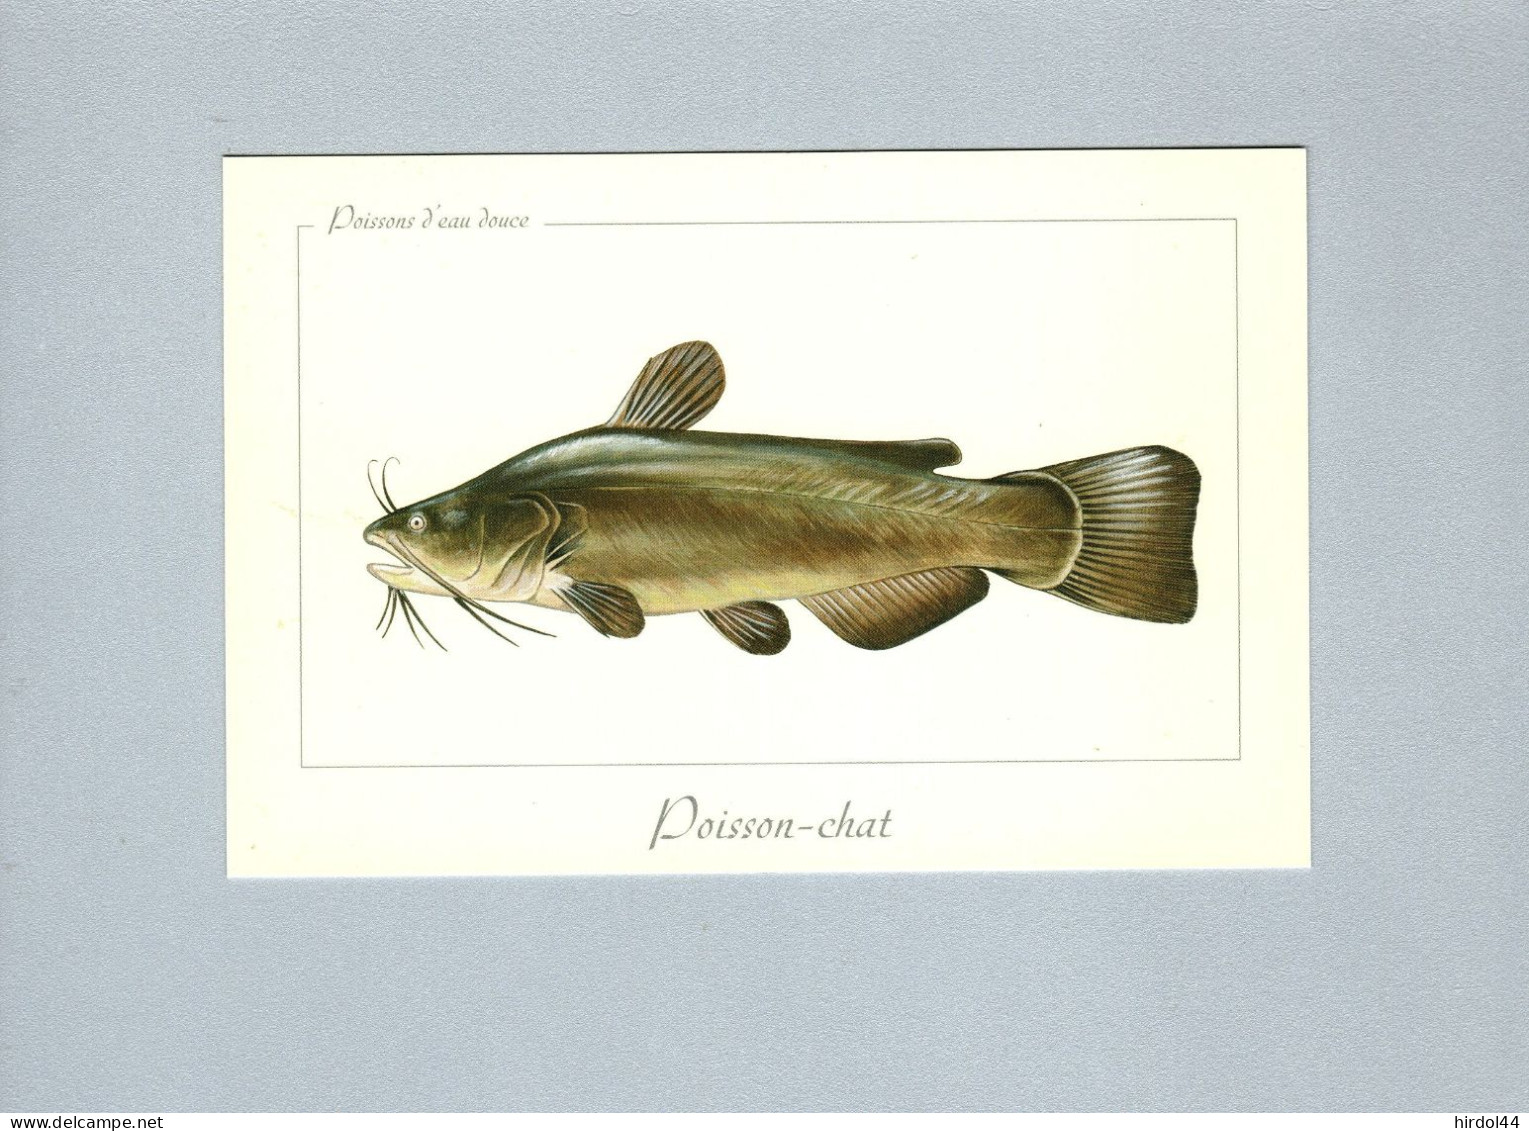 Poissons - Fische Und Schaltiere